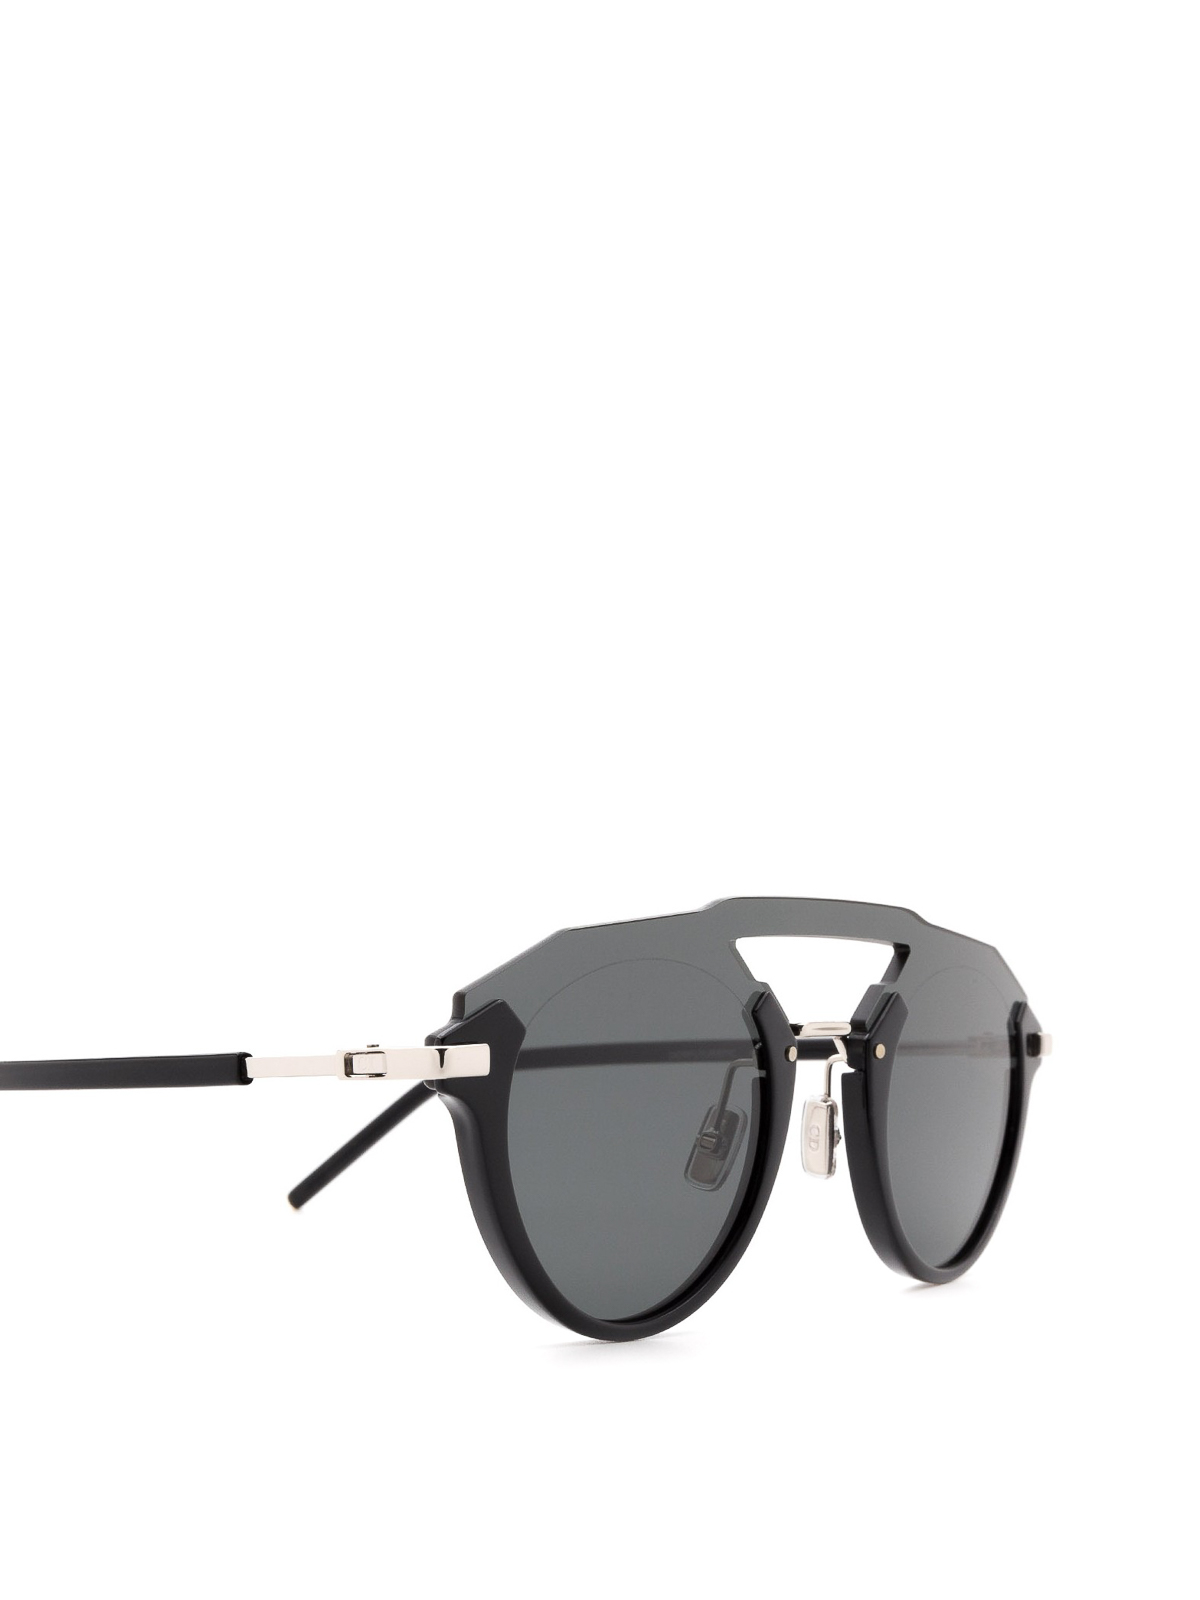 Original Dior Sonnenbrille schwarz Accessoires Sonnenbrillen Retro Brillen 